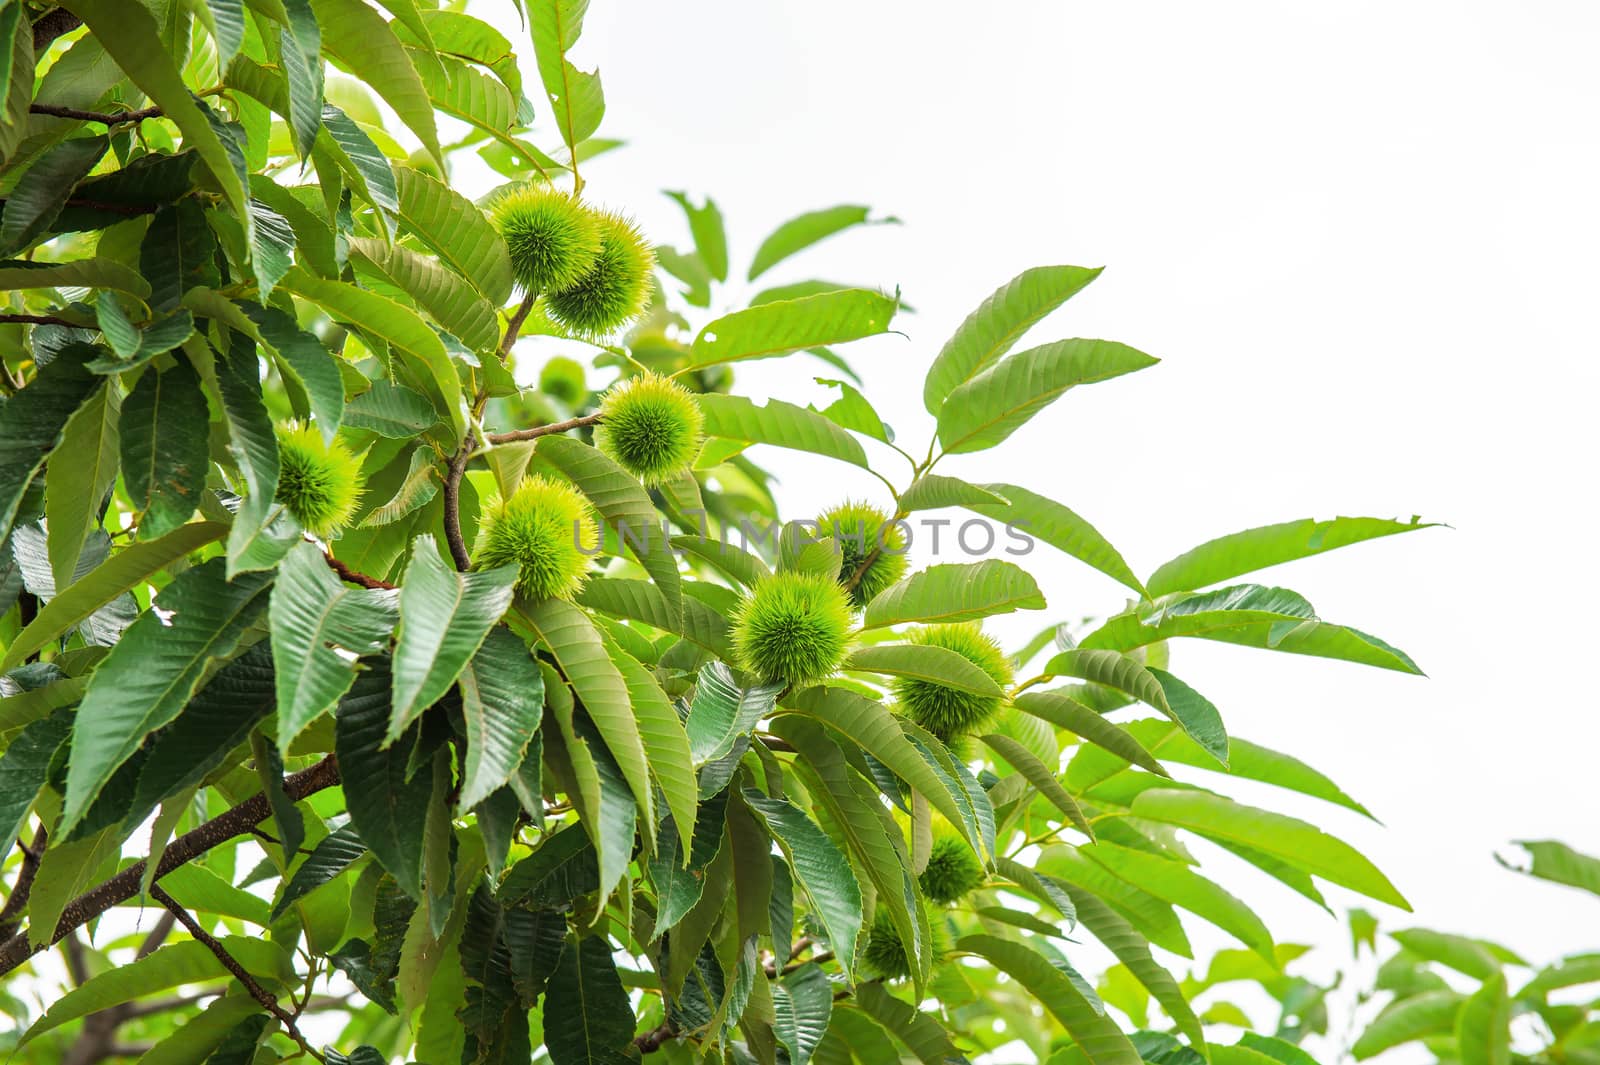 Chestnut (Castanea fruits) by gutarphotoghaphy